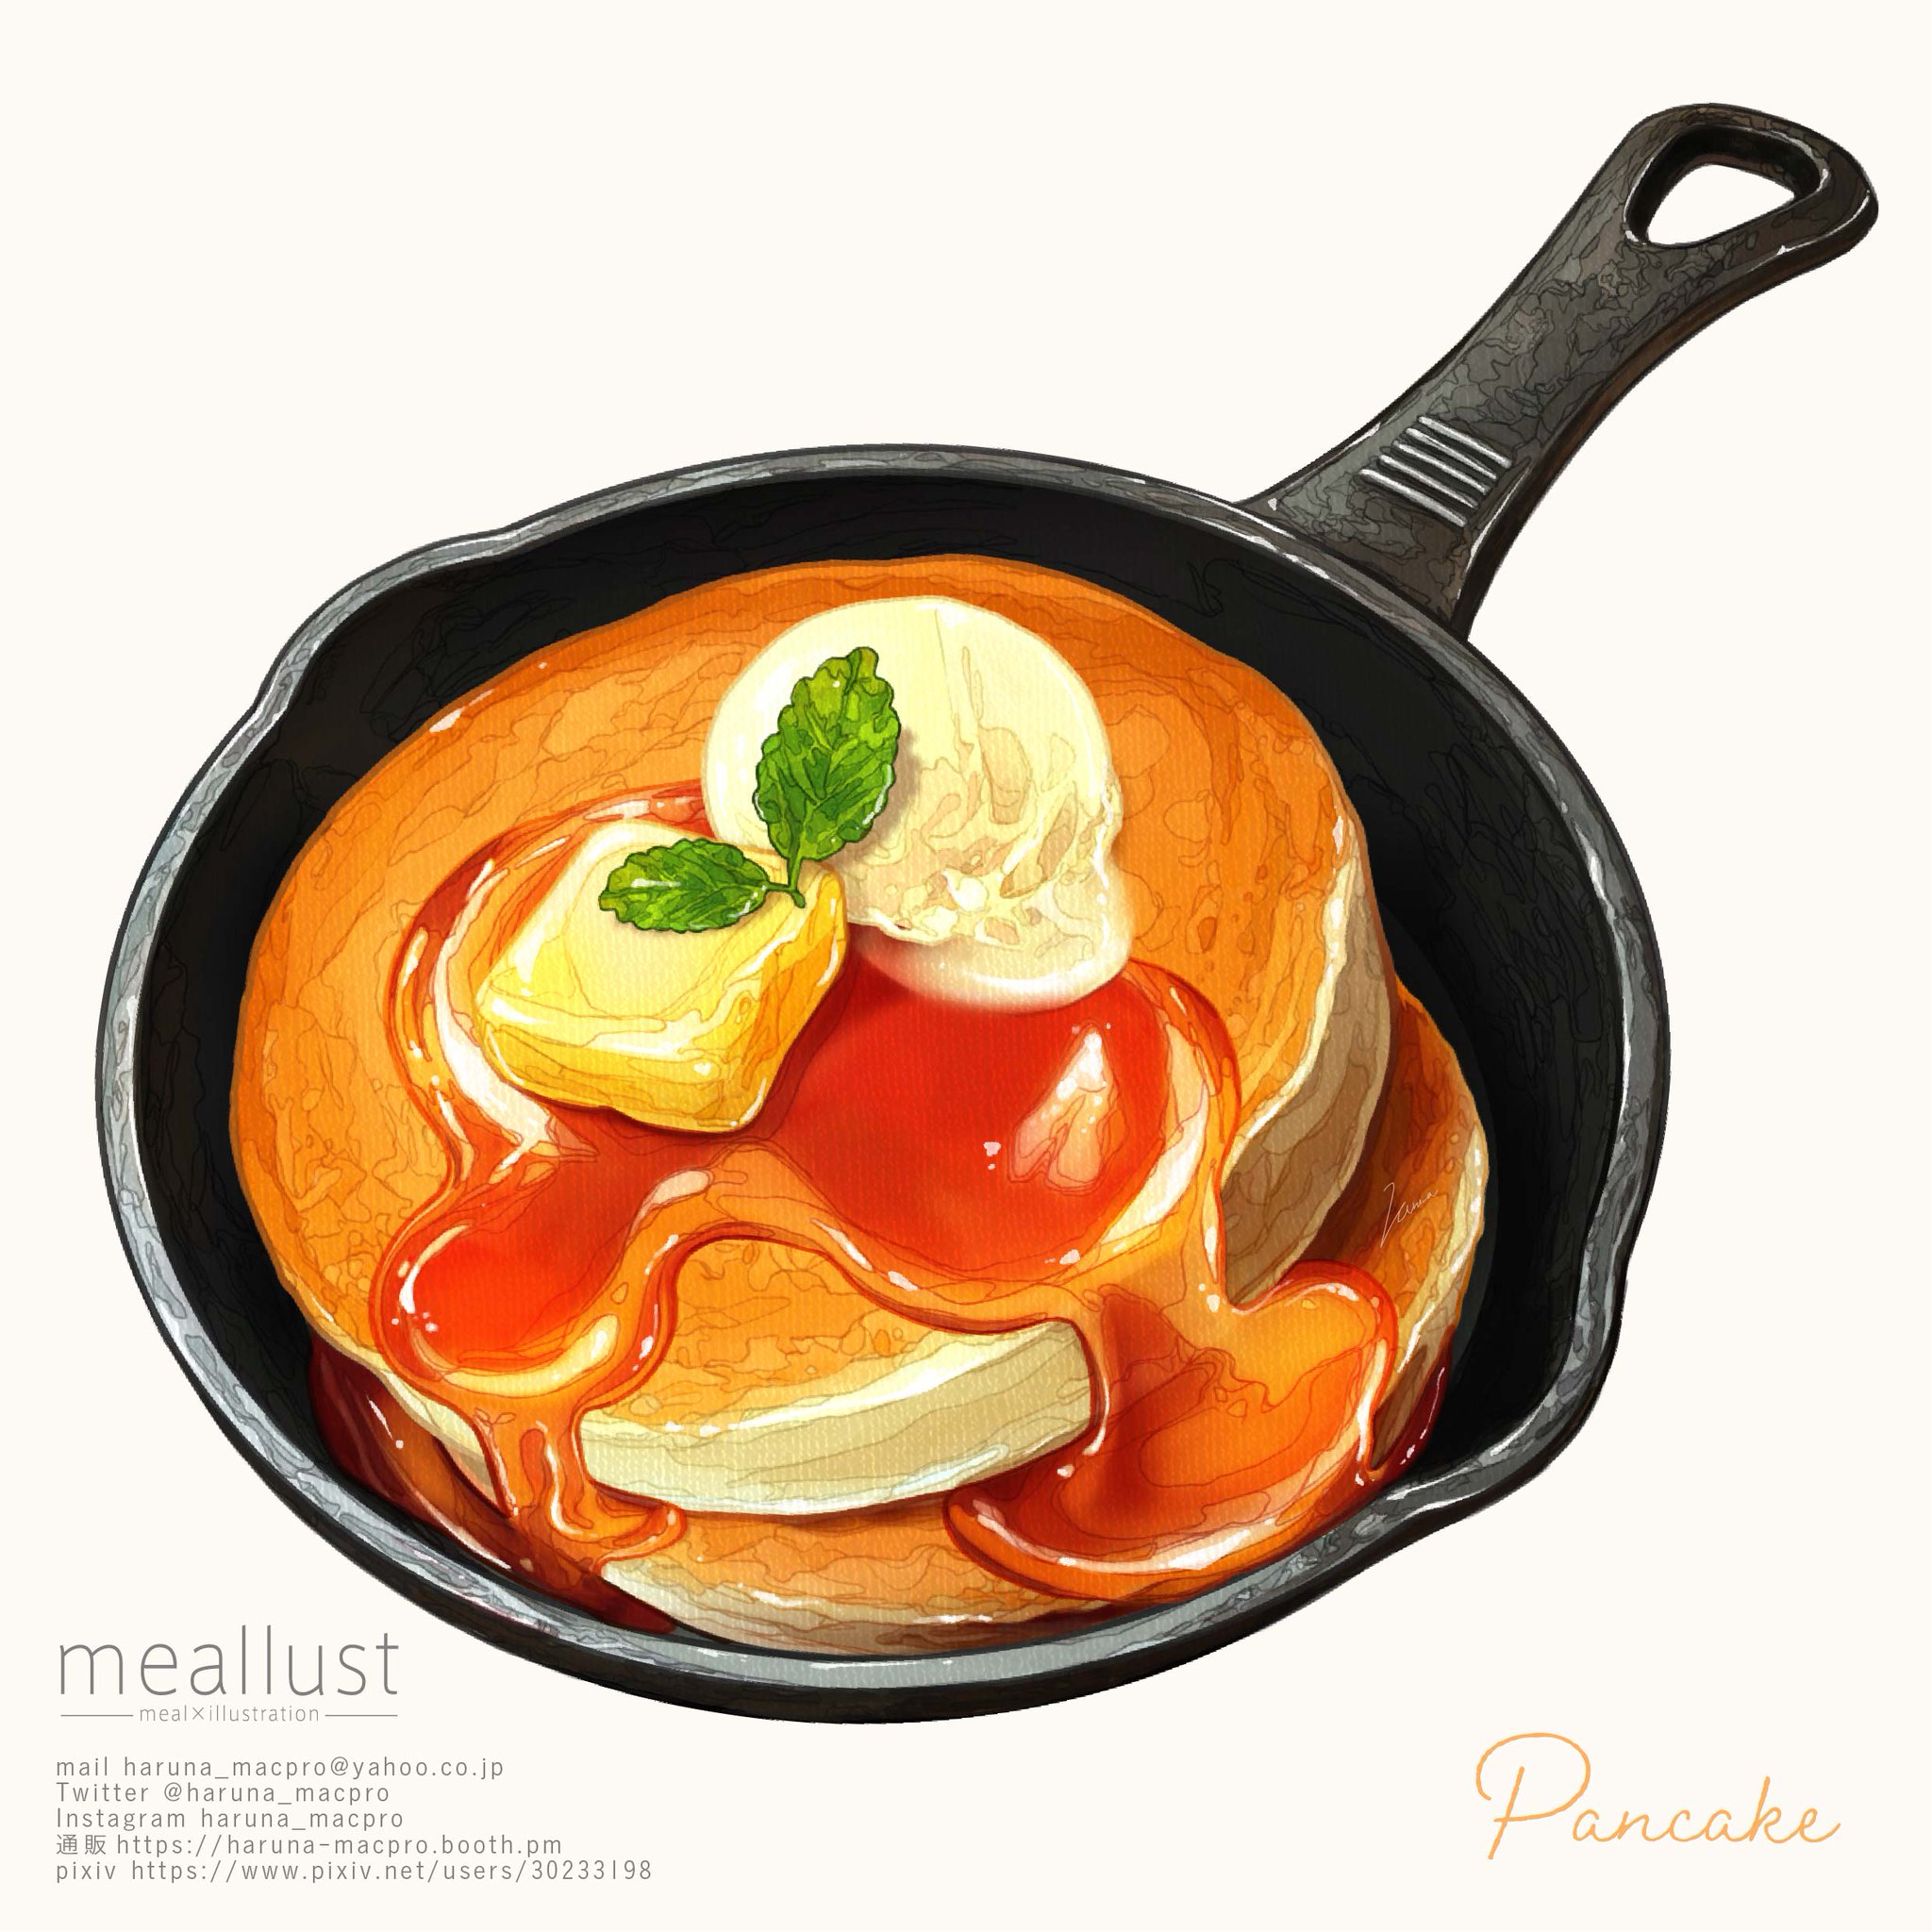 Pancake插画图片壁纸